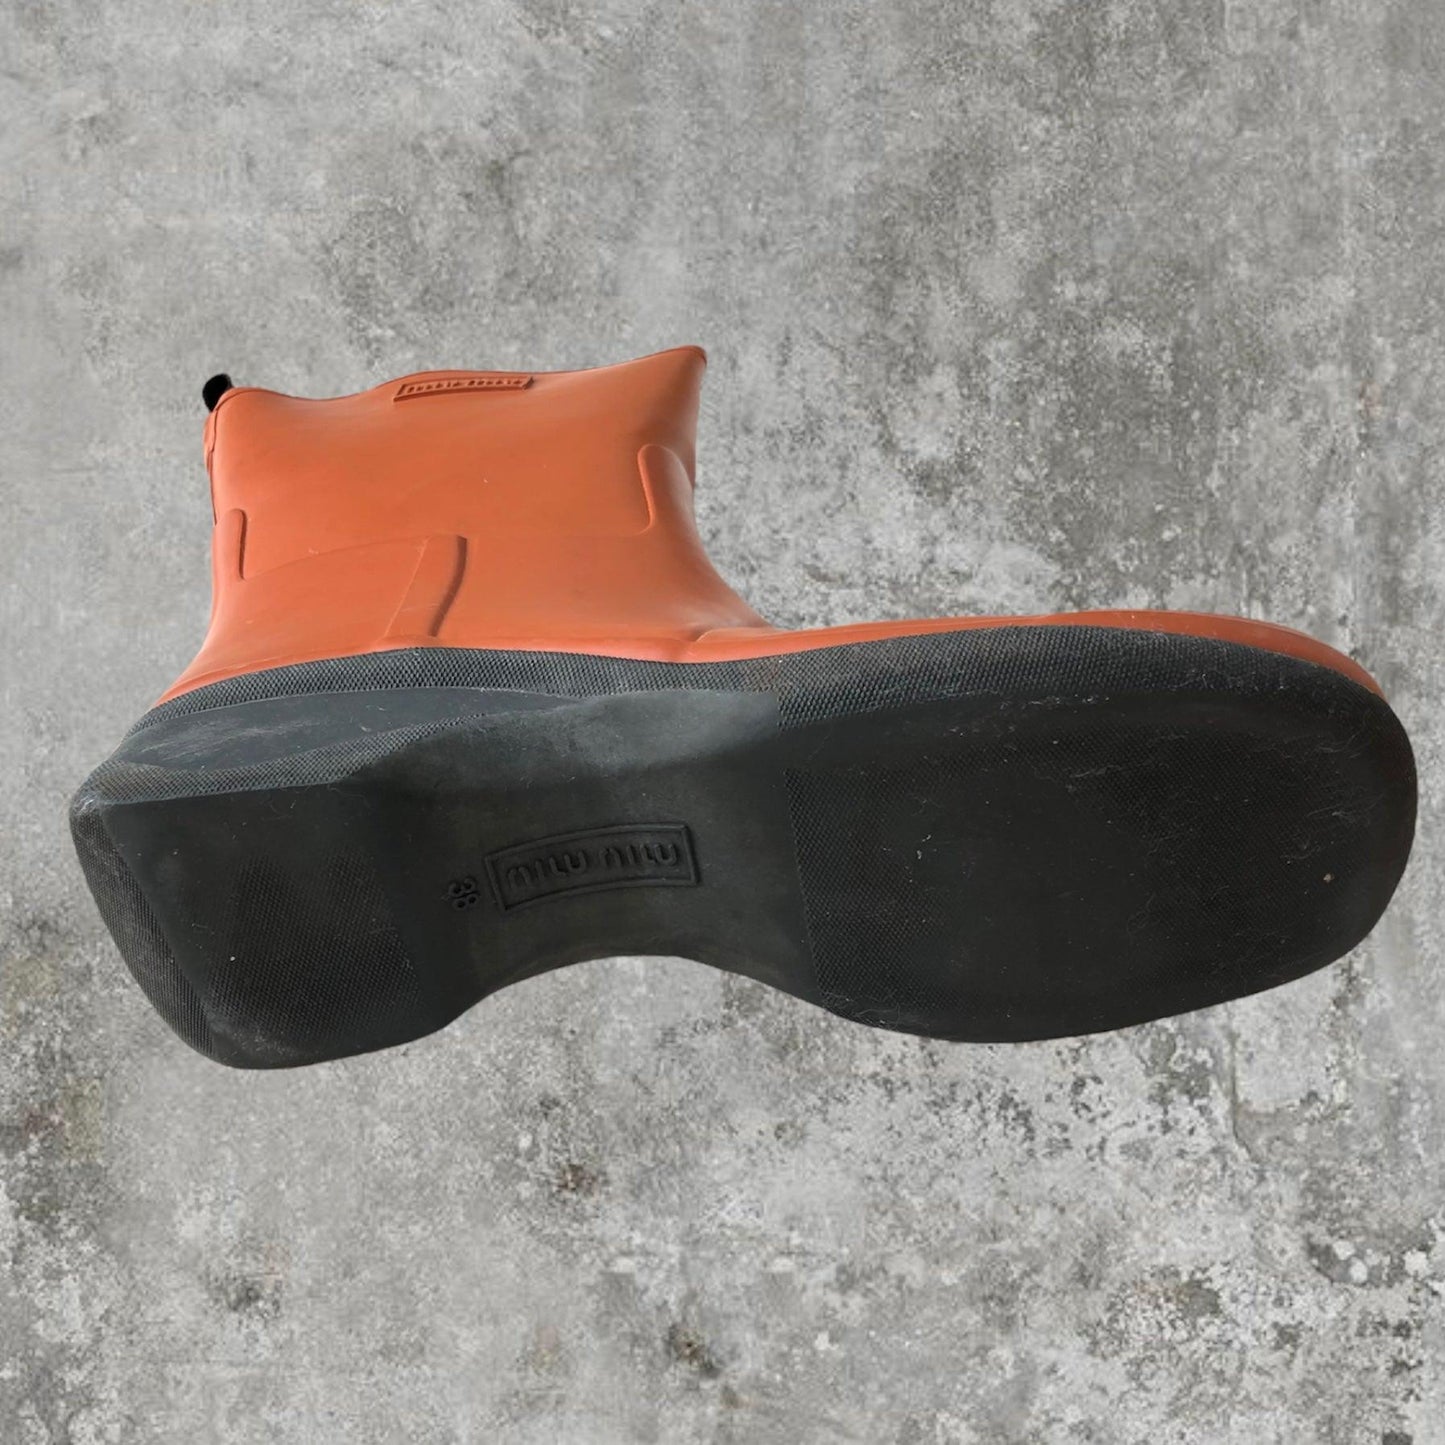 Miu Miu Rain Boots - Size 8 - Known Source